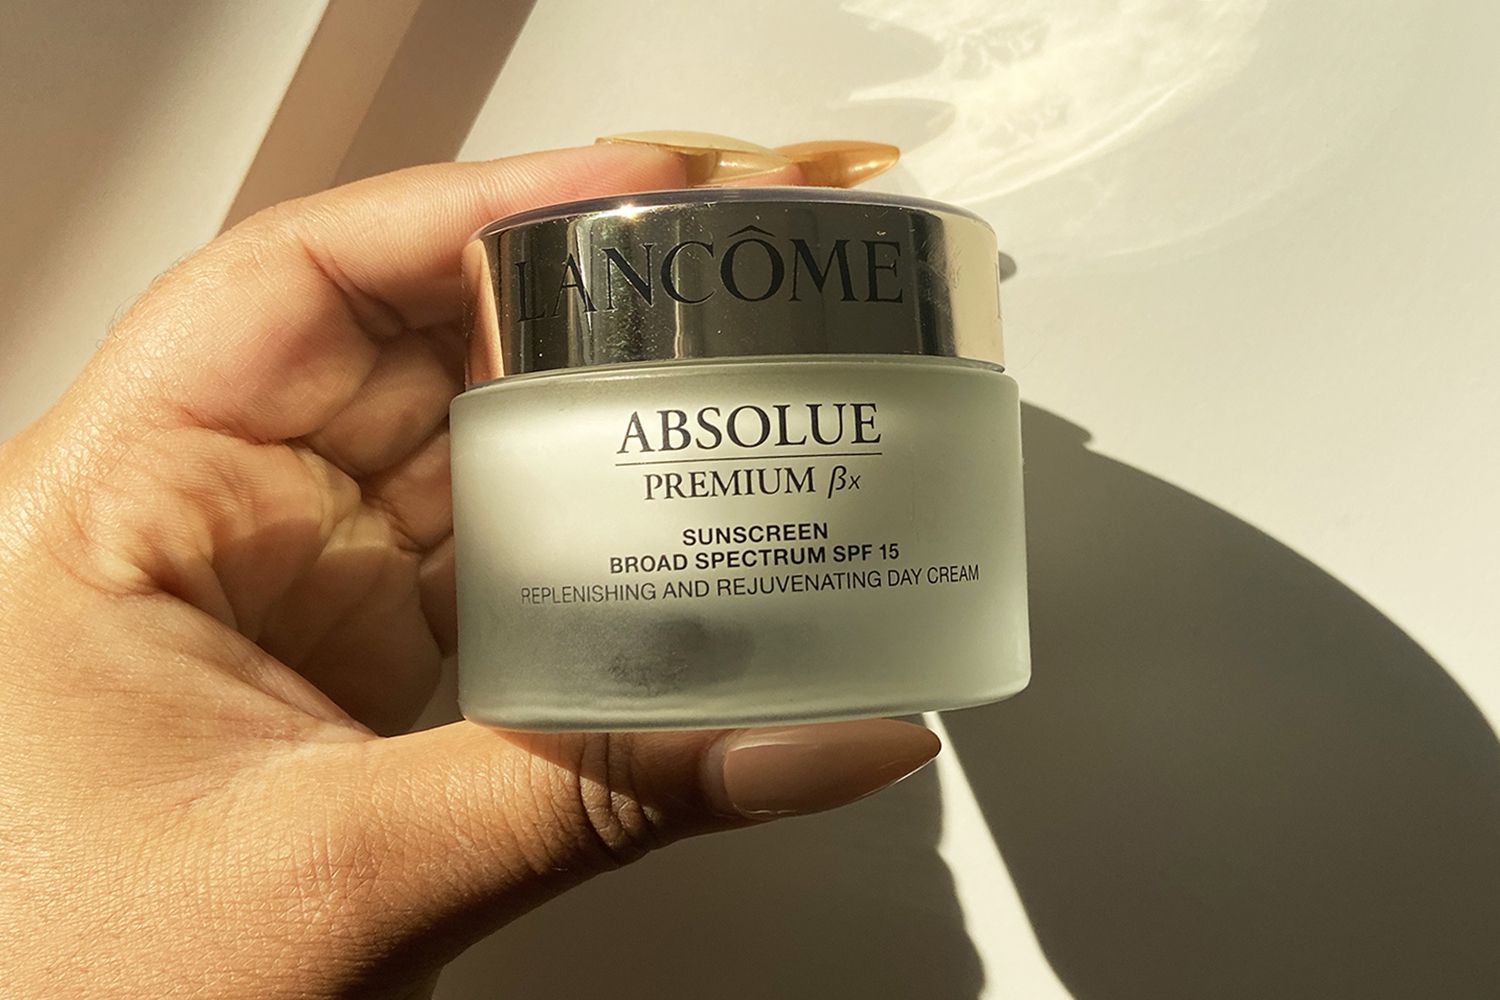 Lancôme Absolue Premium Bx Cream